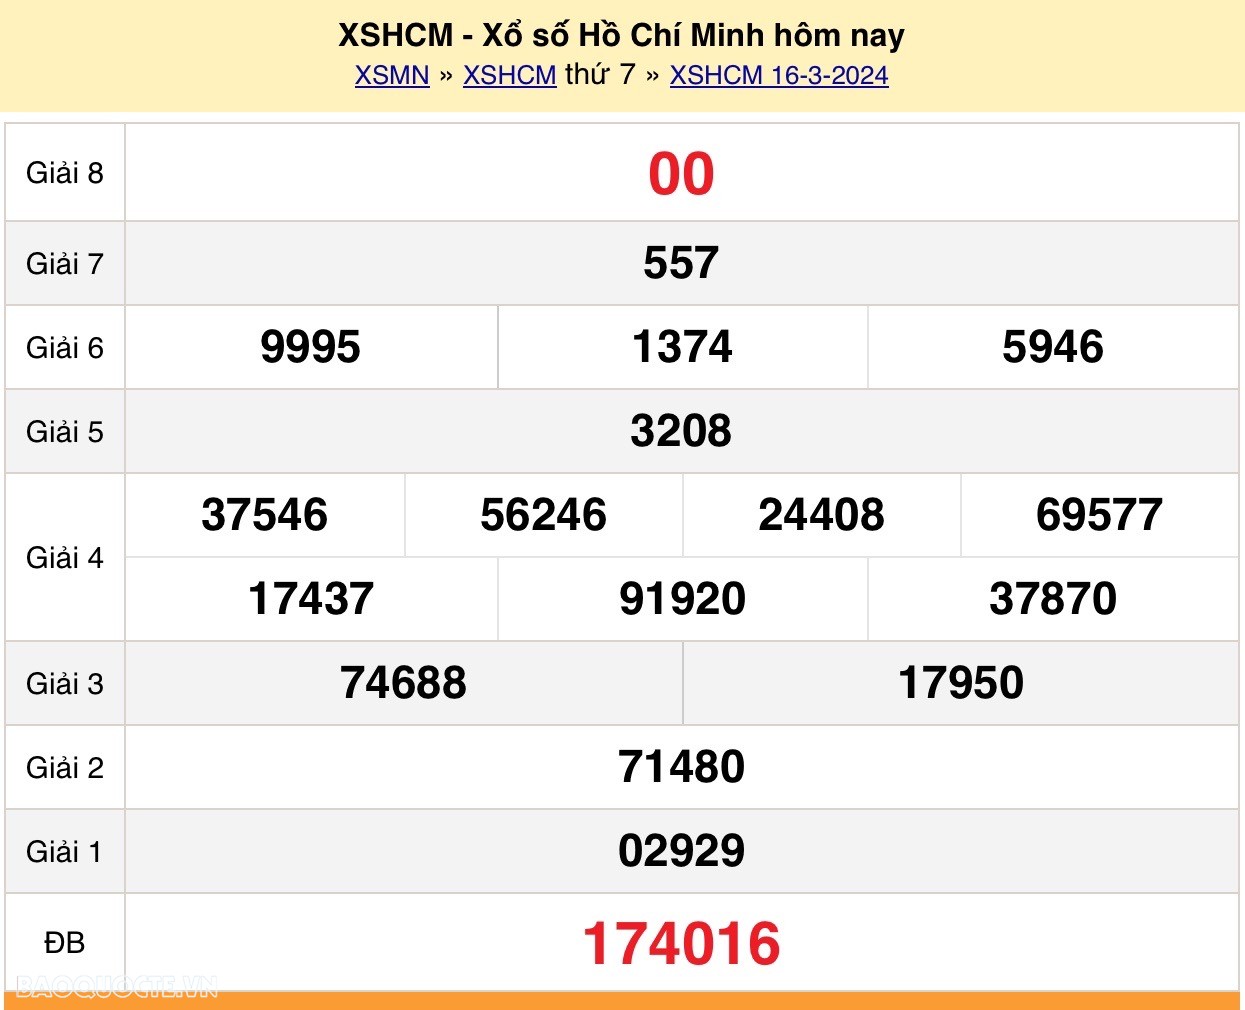 XSHCM 16/3, trực tiếp kết quả xổ số TP Hồ Chí Minh hôm nay 16/3/2024. XSHCM thứ 7